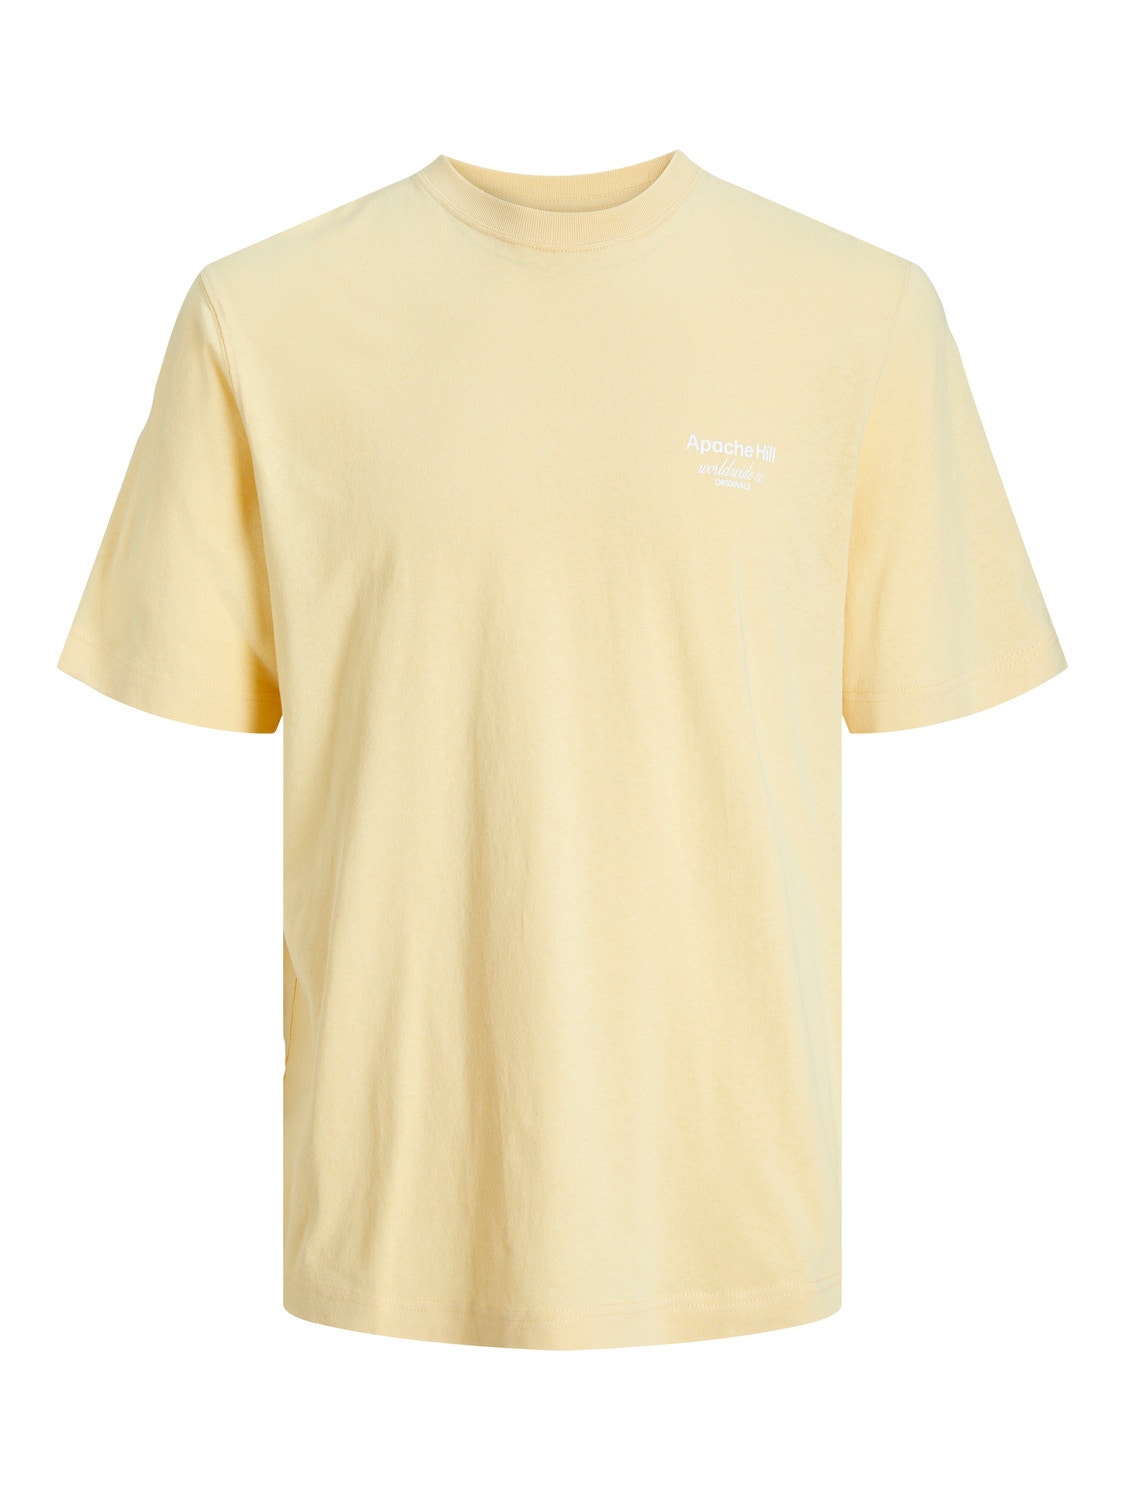 Jack & Jones Bedrukt T-shirt Voor jongens -Italian Straw - 12253986